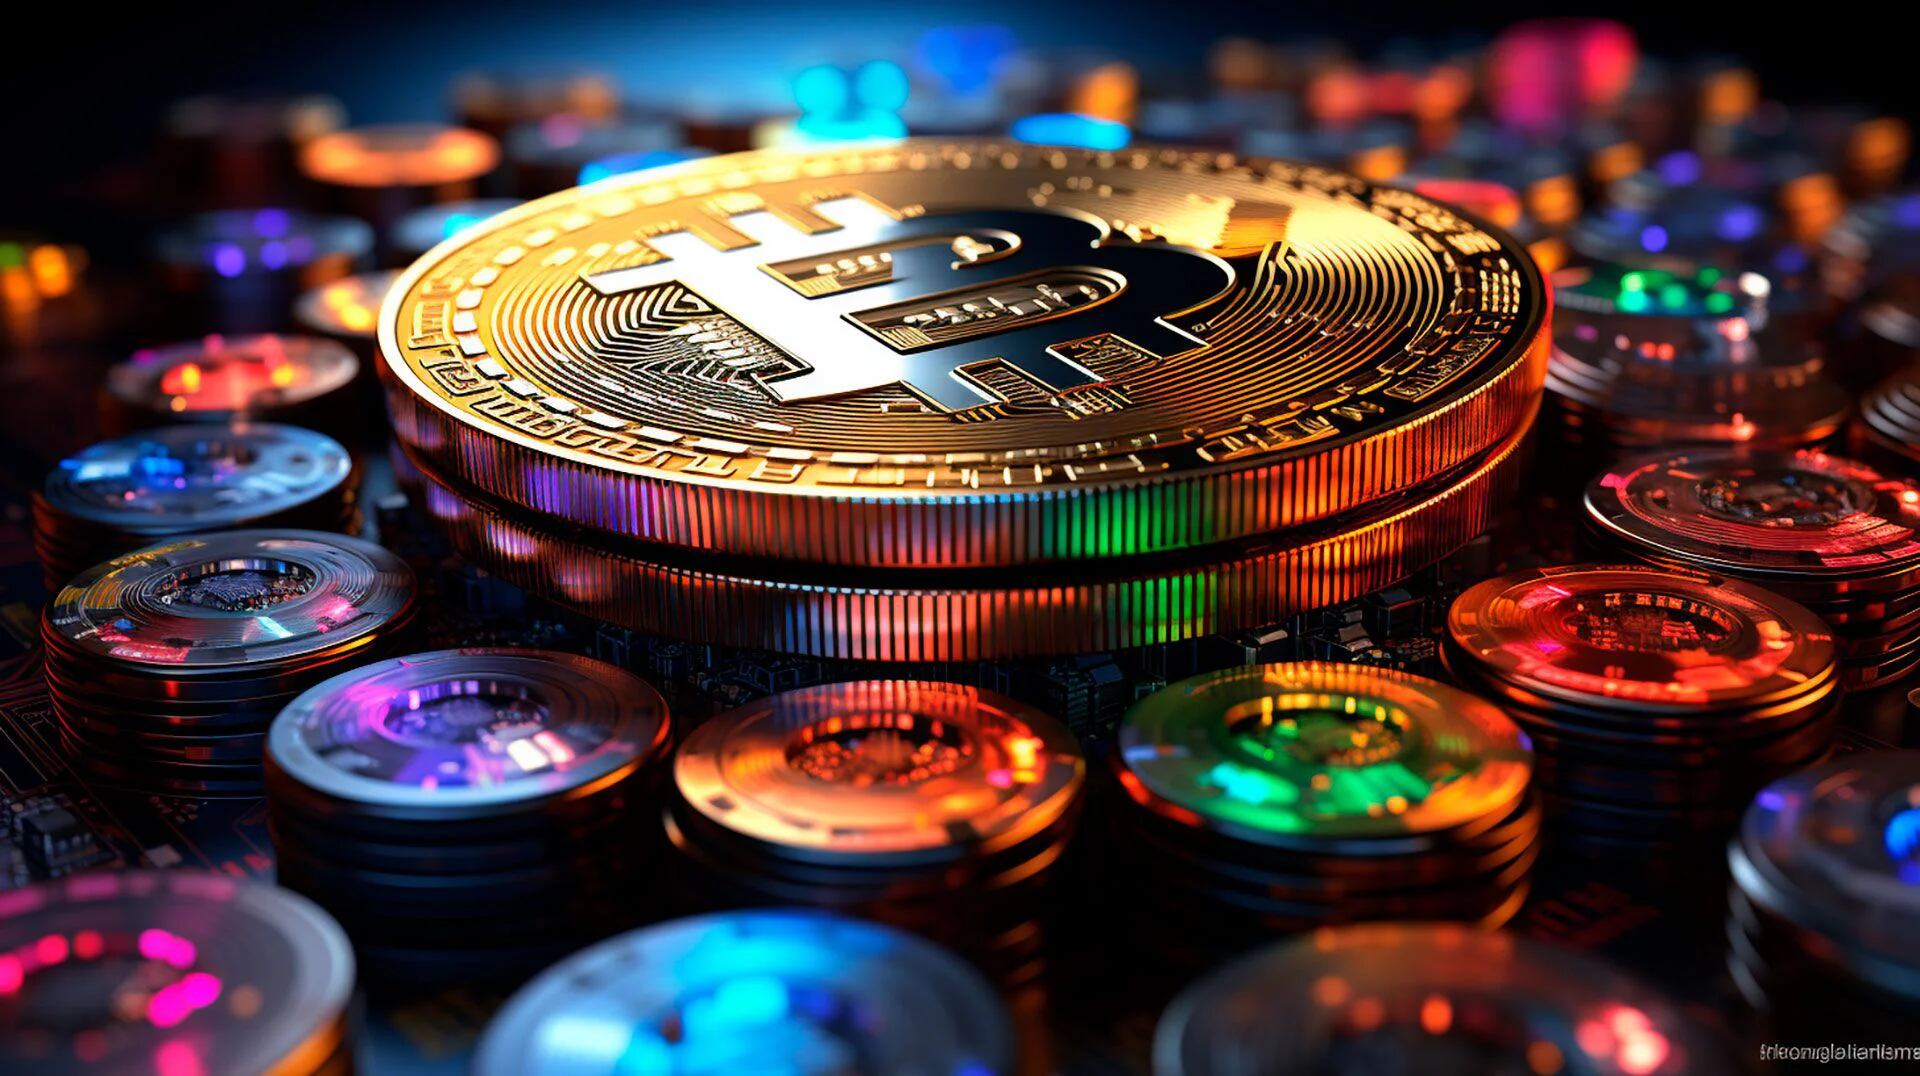 Cómo ha cambiado el valor de la criptomoneda bitcoin en las últimas 24 horas